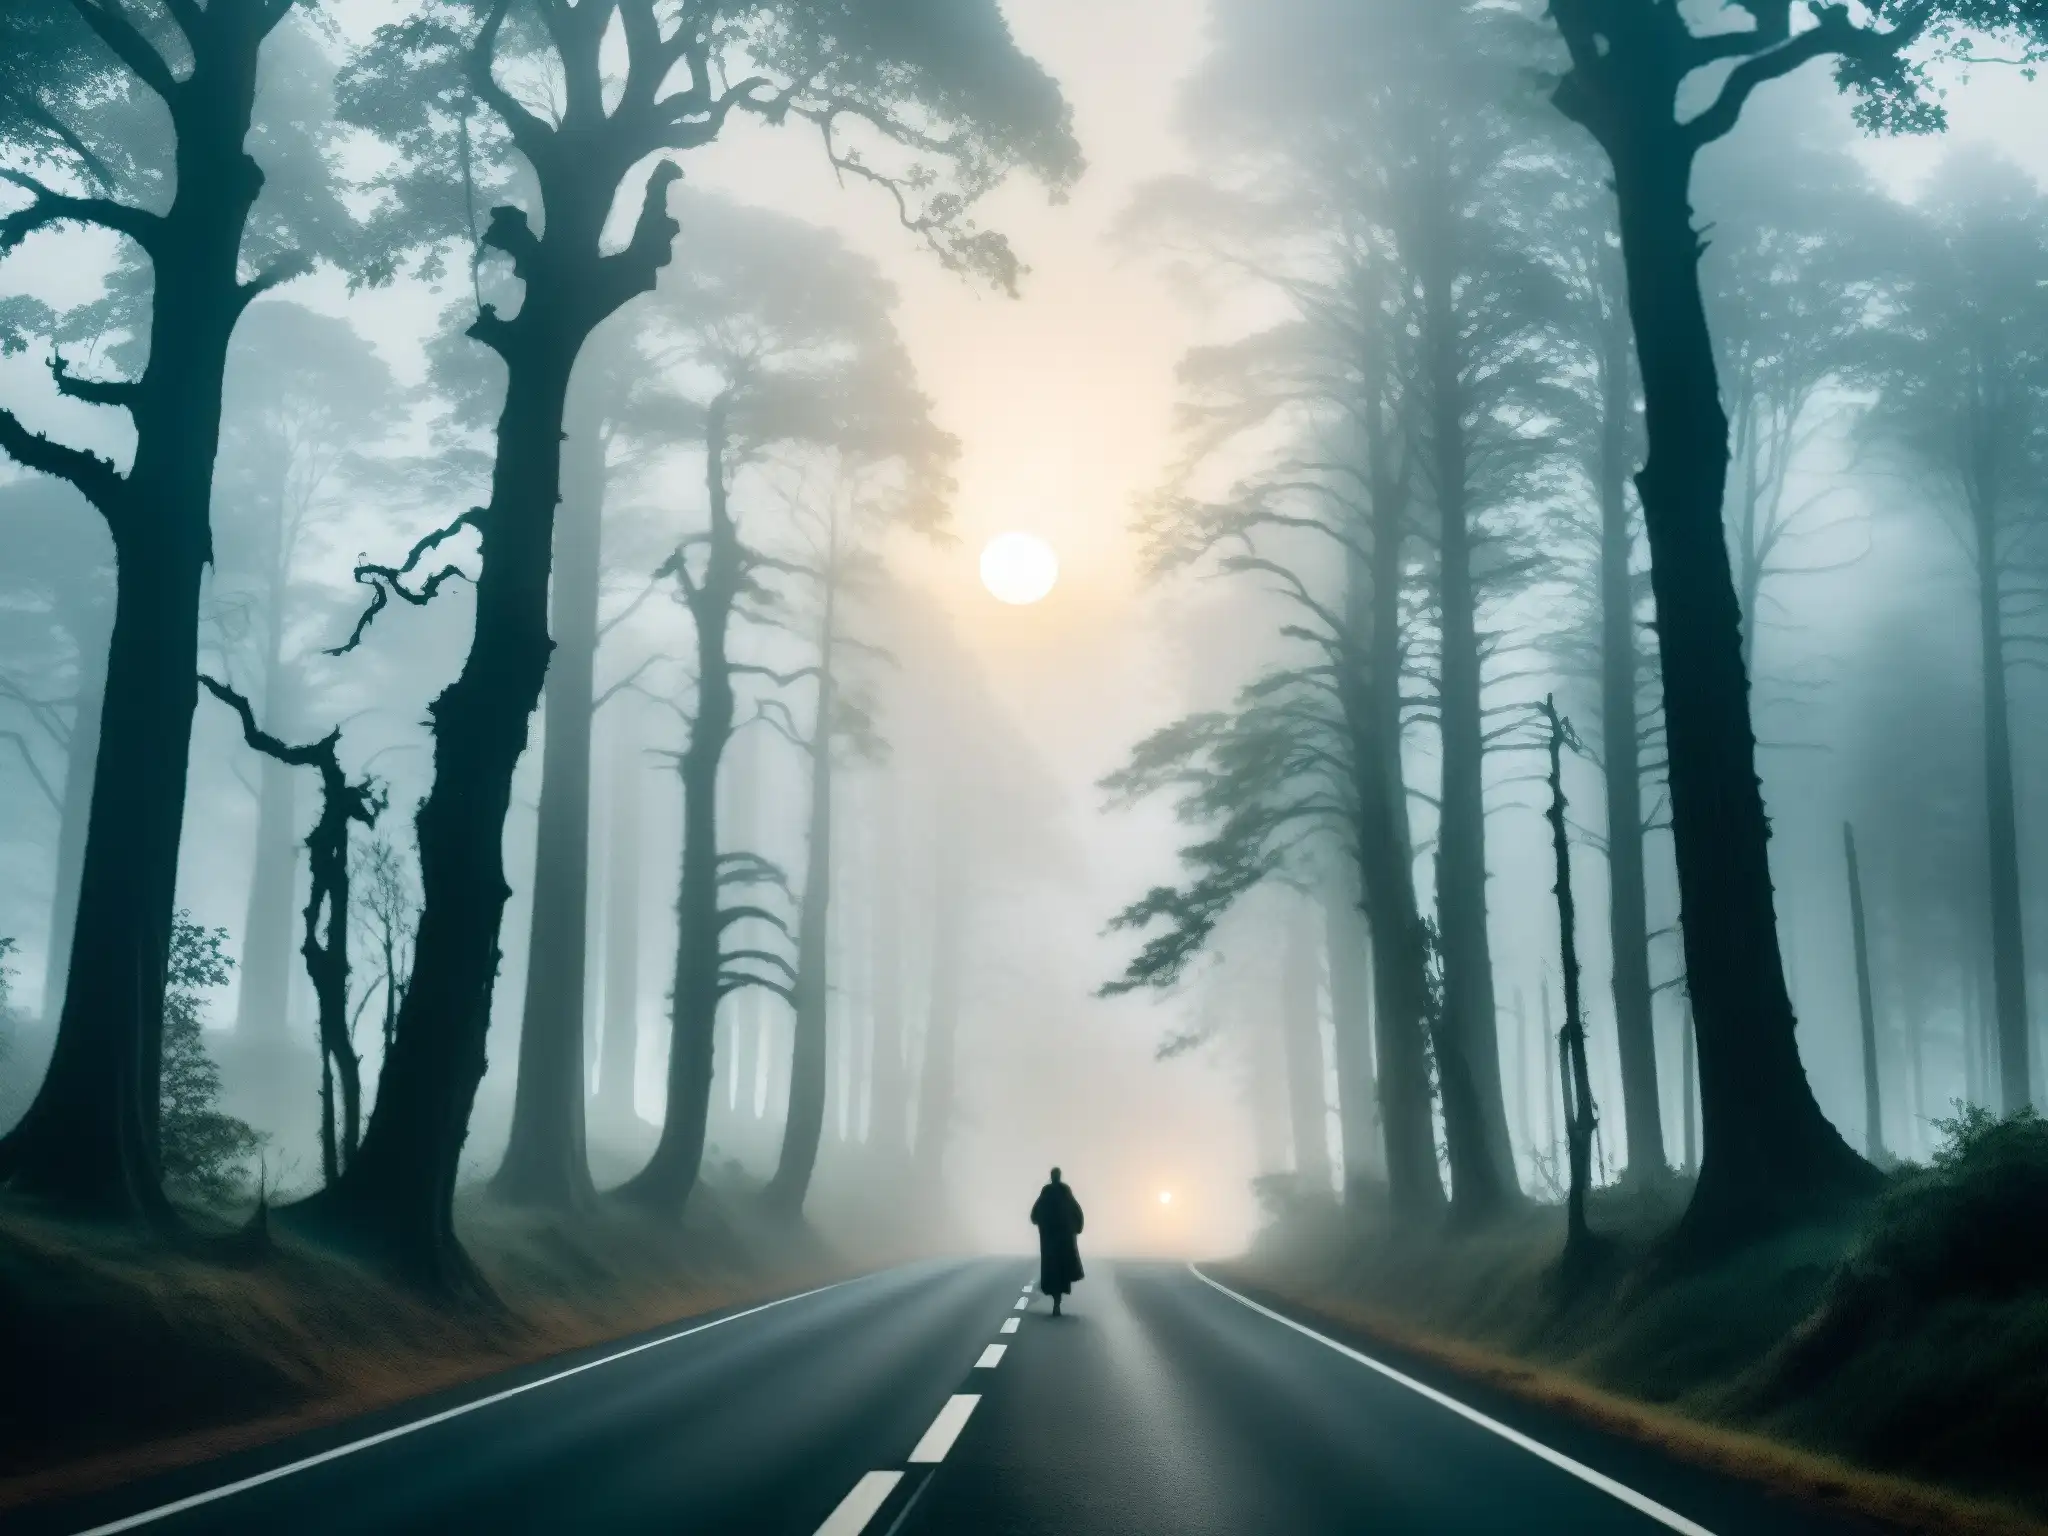 Una carretera oscura rodeada de árboles retorcidos, neblina y figuras fantasmales, evocando leyendas urbanas de Thane